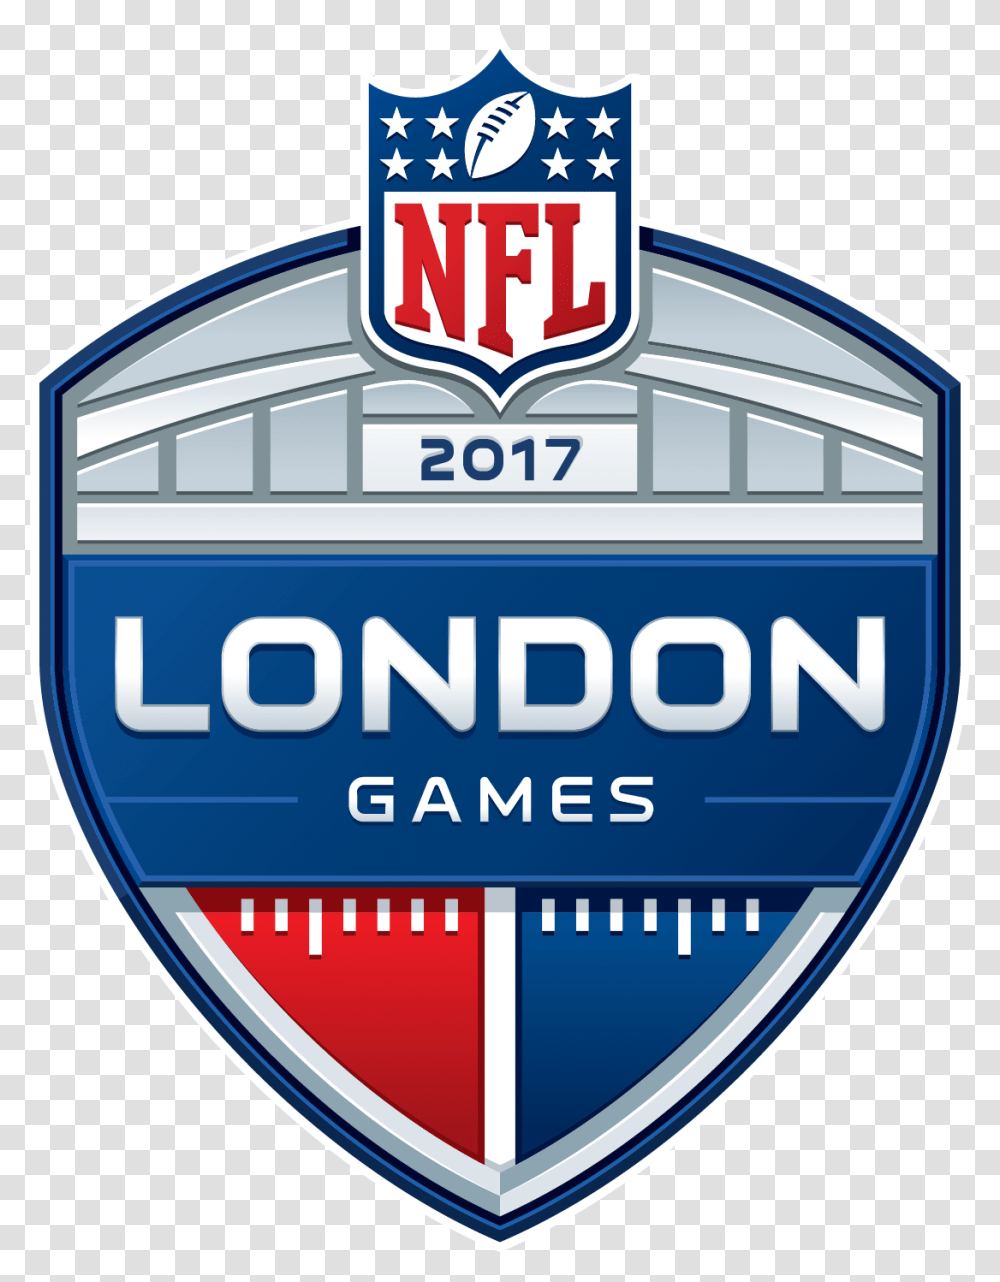 London Games 2019 Nfl, Label, Logo Transparent Png